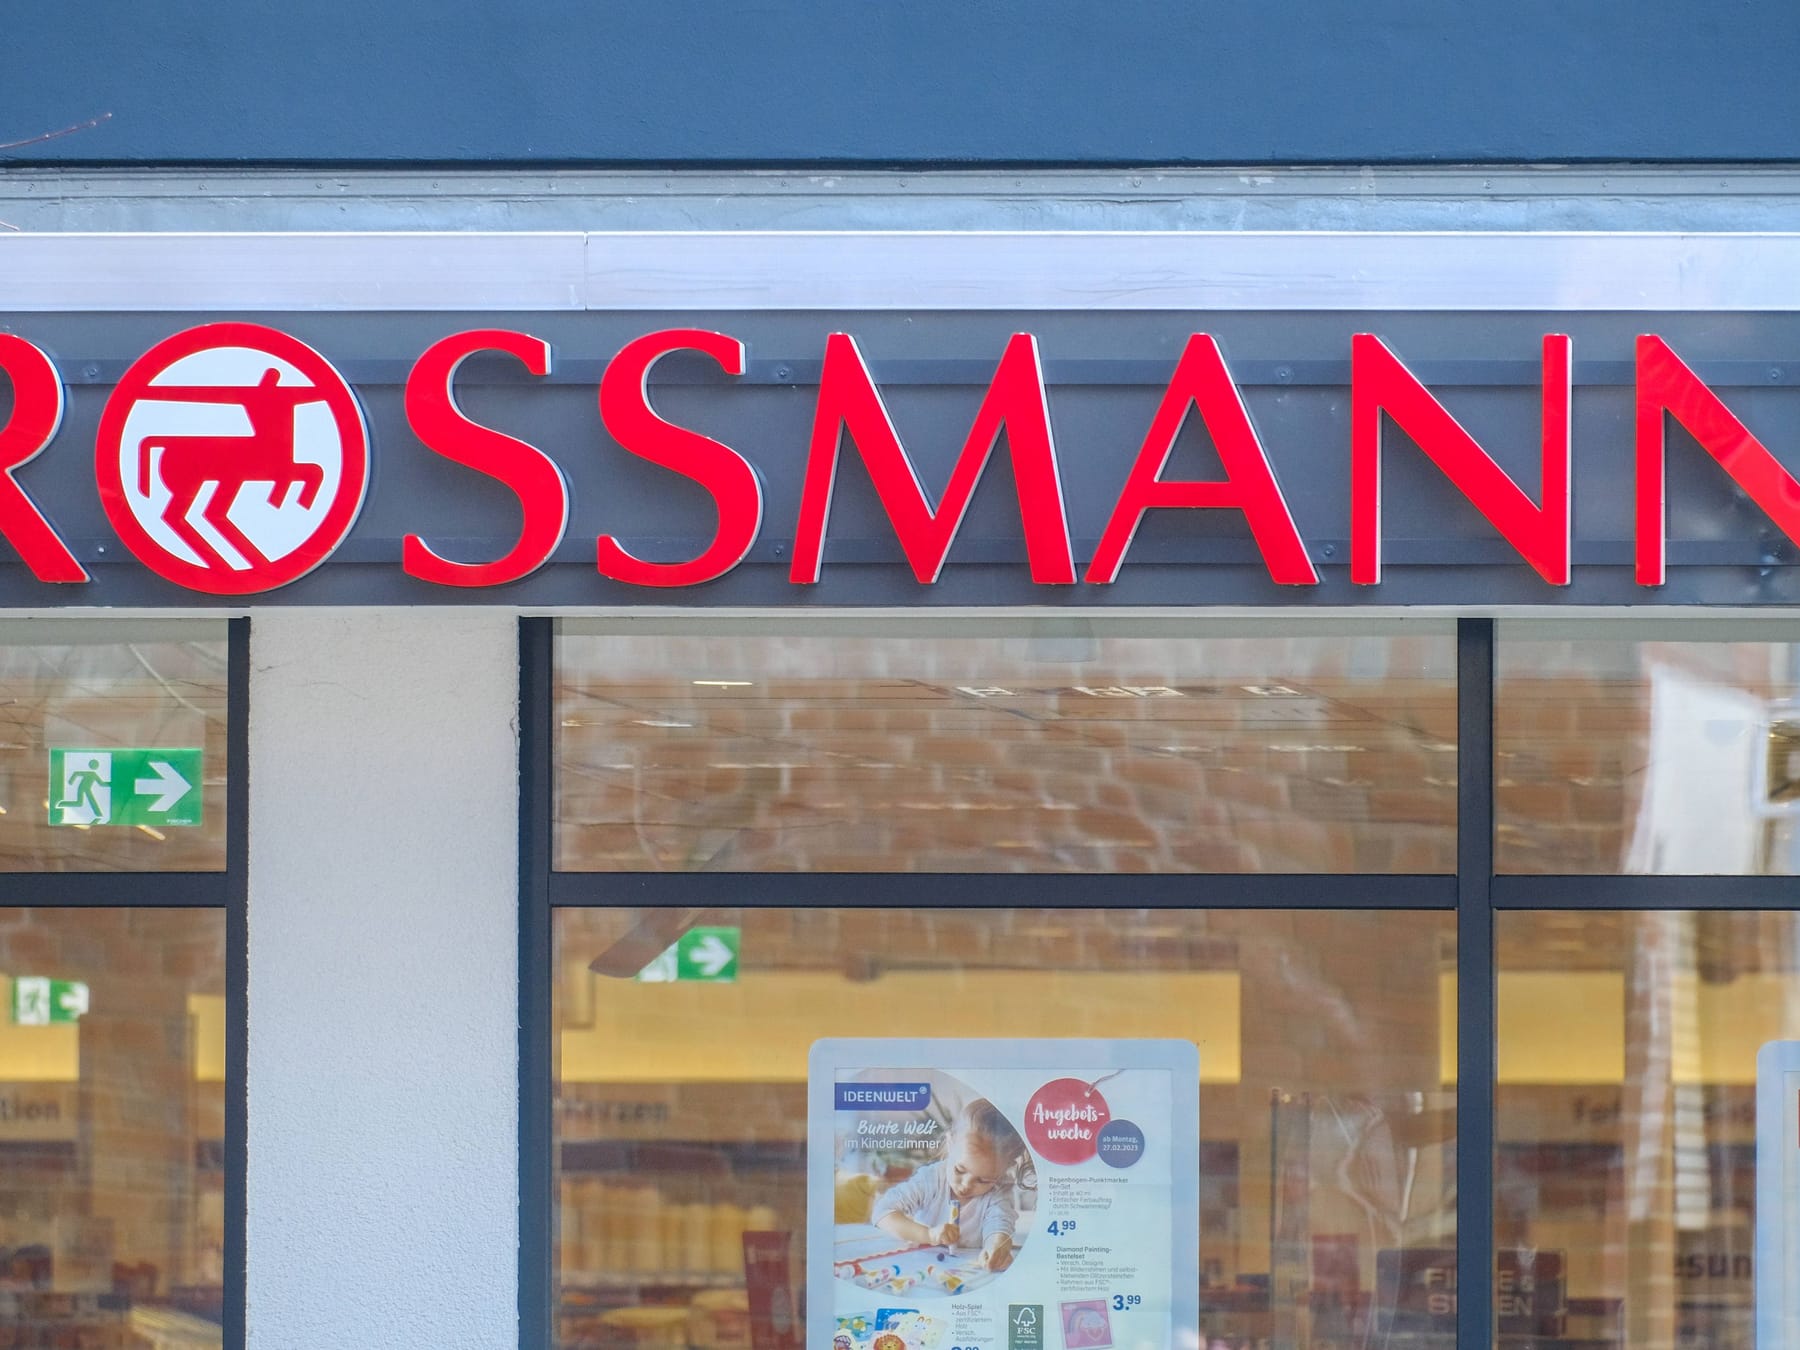 Rossmann führt neuen Gratis-Service ein: So können Kunden profitieren - CHIP